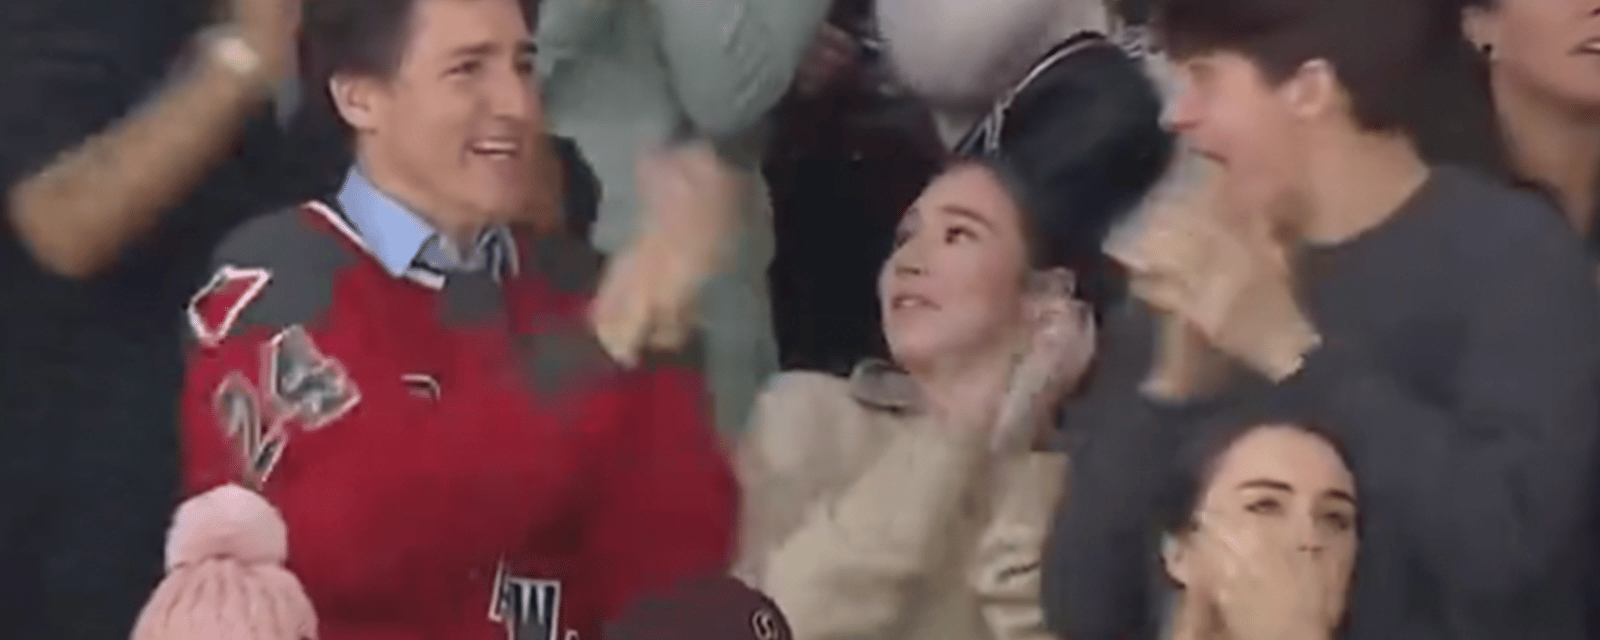 Une vidéo de Justin Trudeau à un match de hockey fait beaucoup jaser les internautes